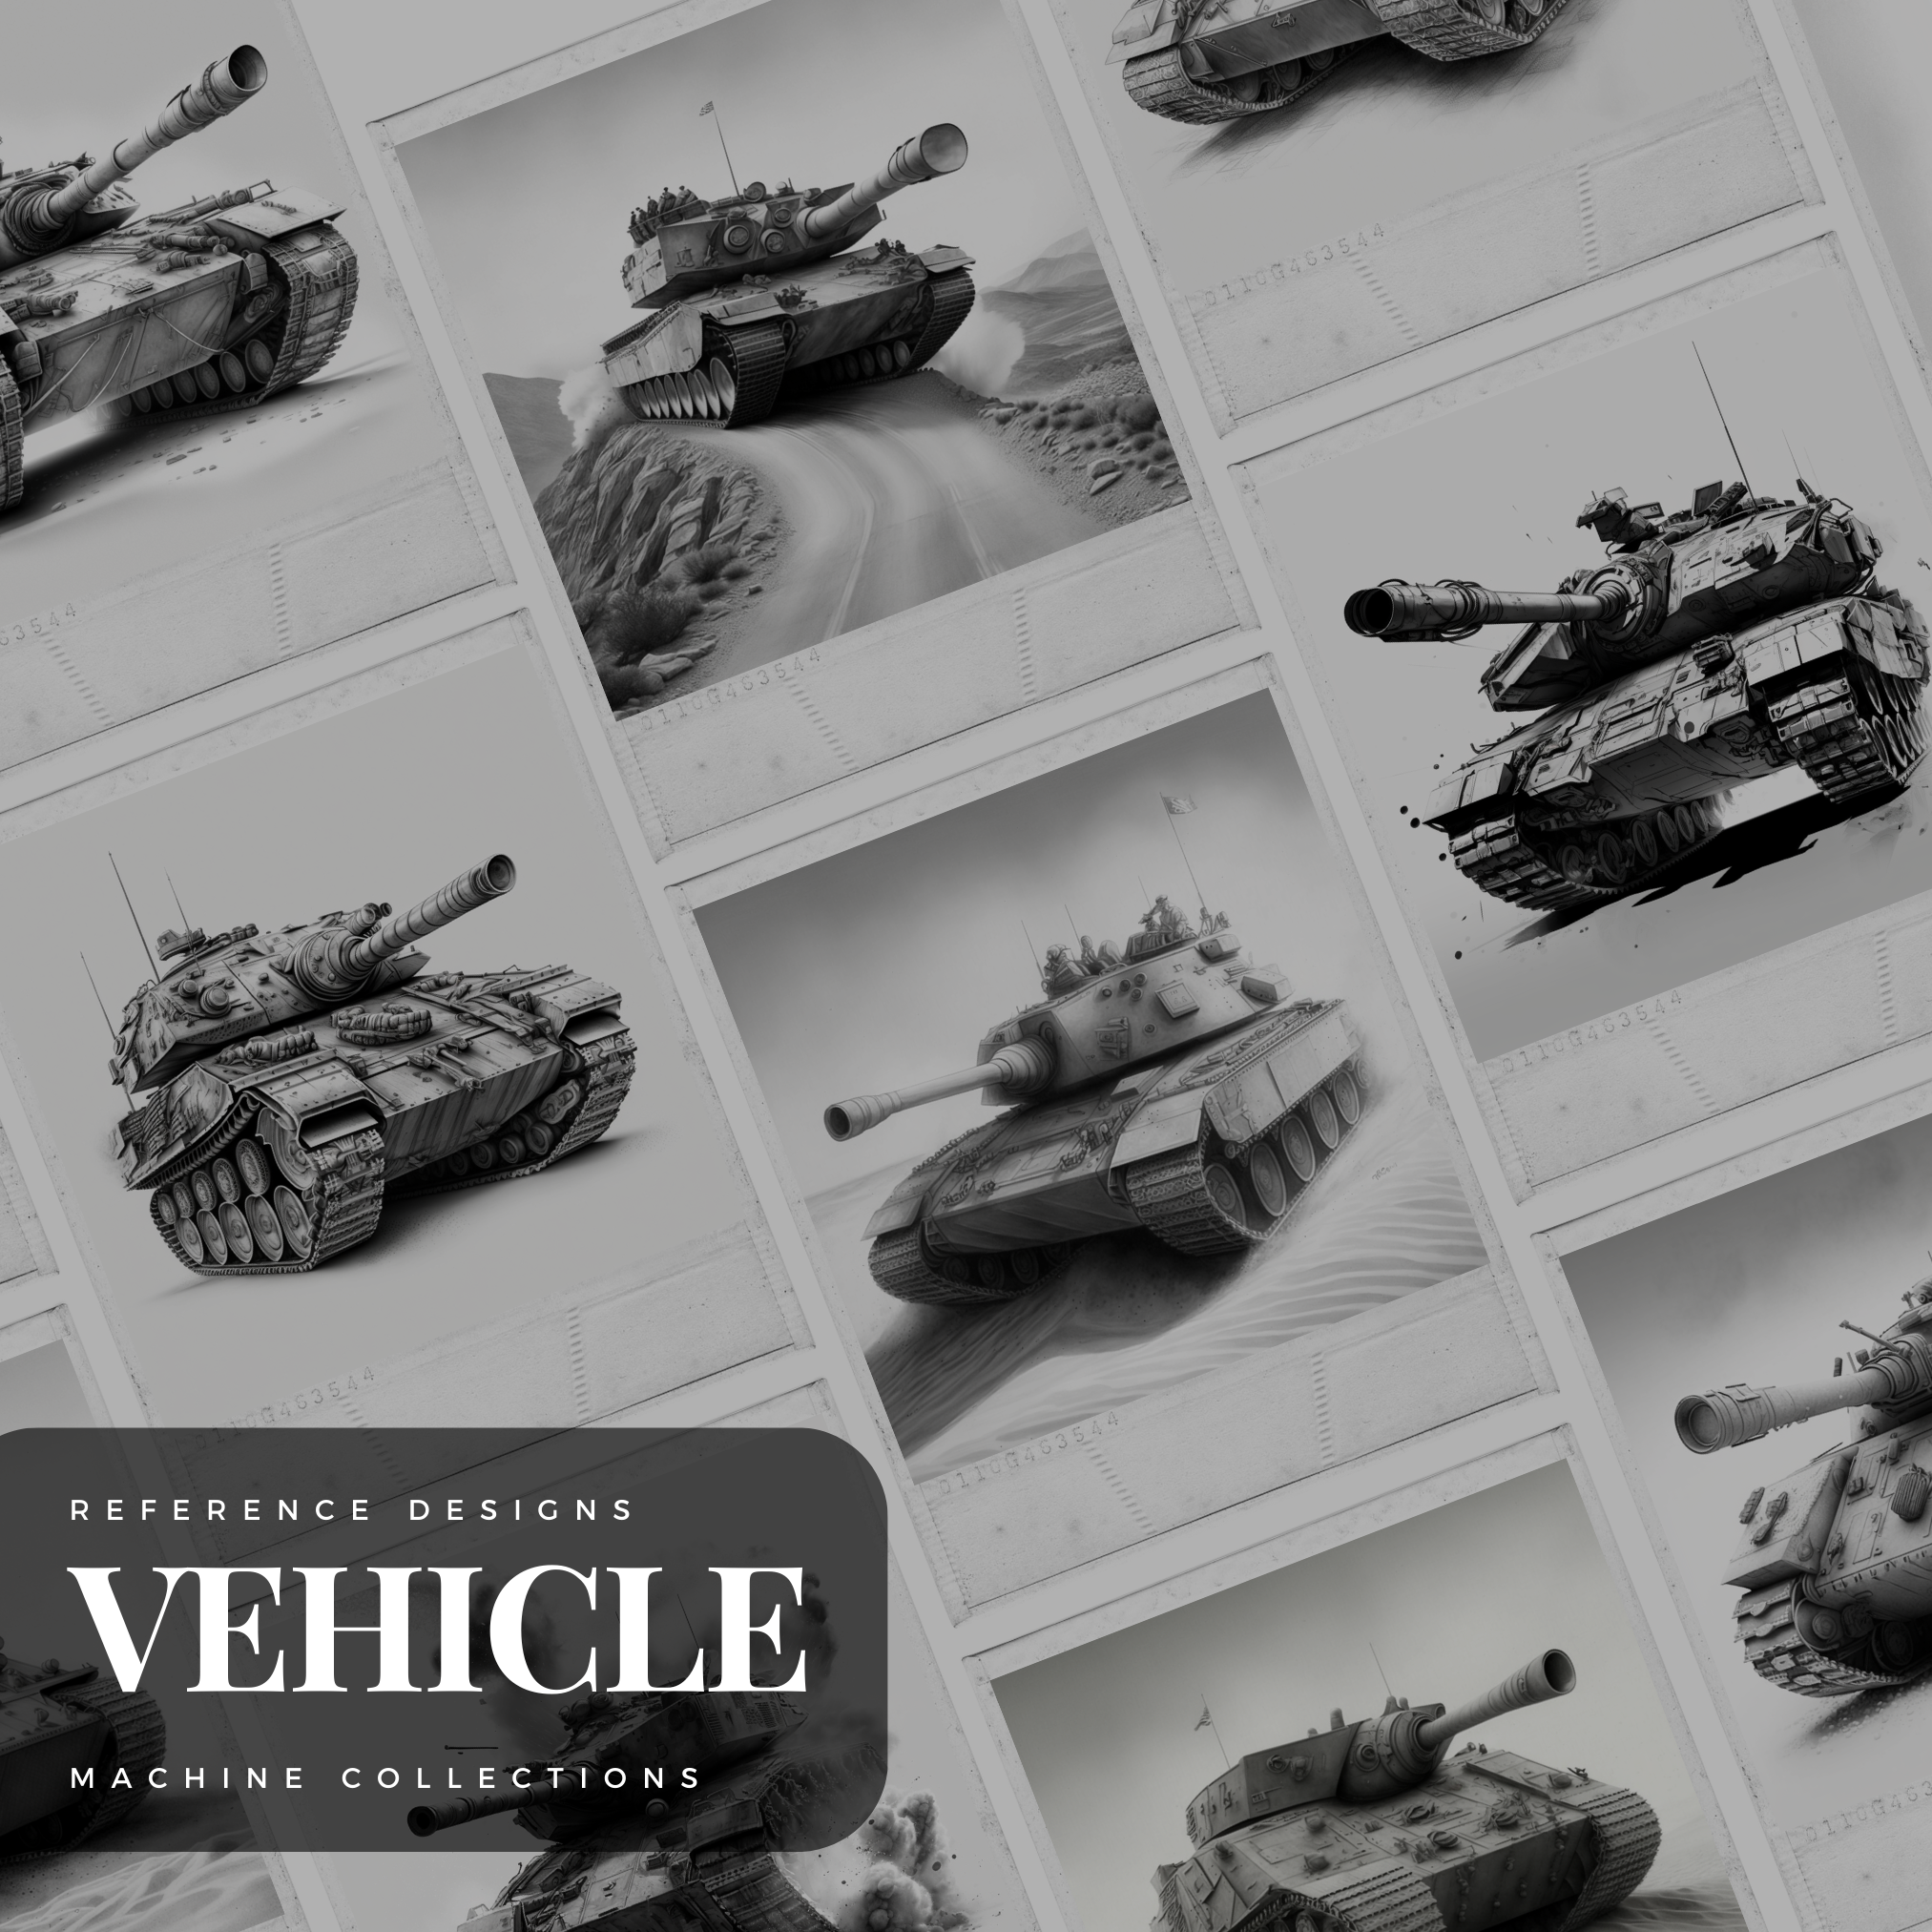 Colección de diseño digital de tanques: 50 imágenes de Procreate y Sketchbook